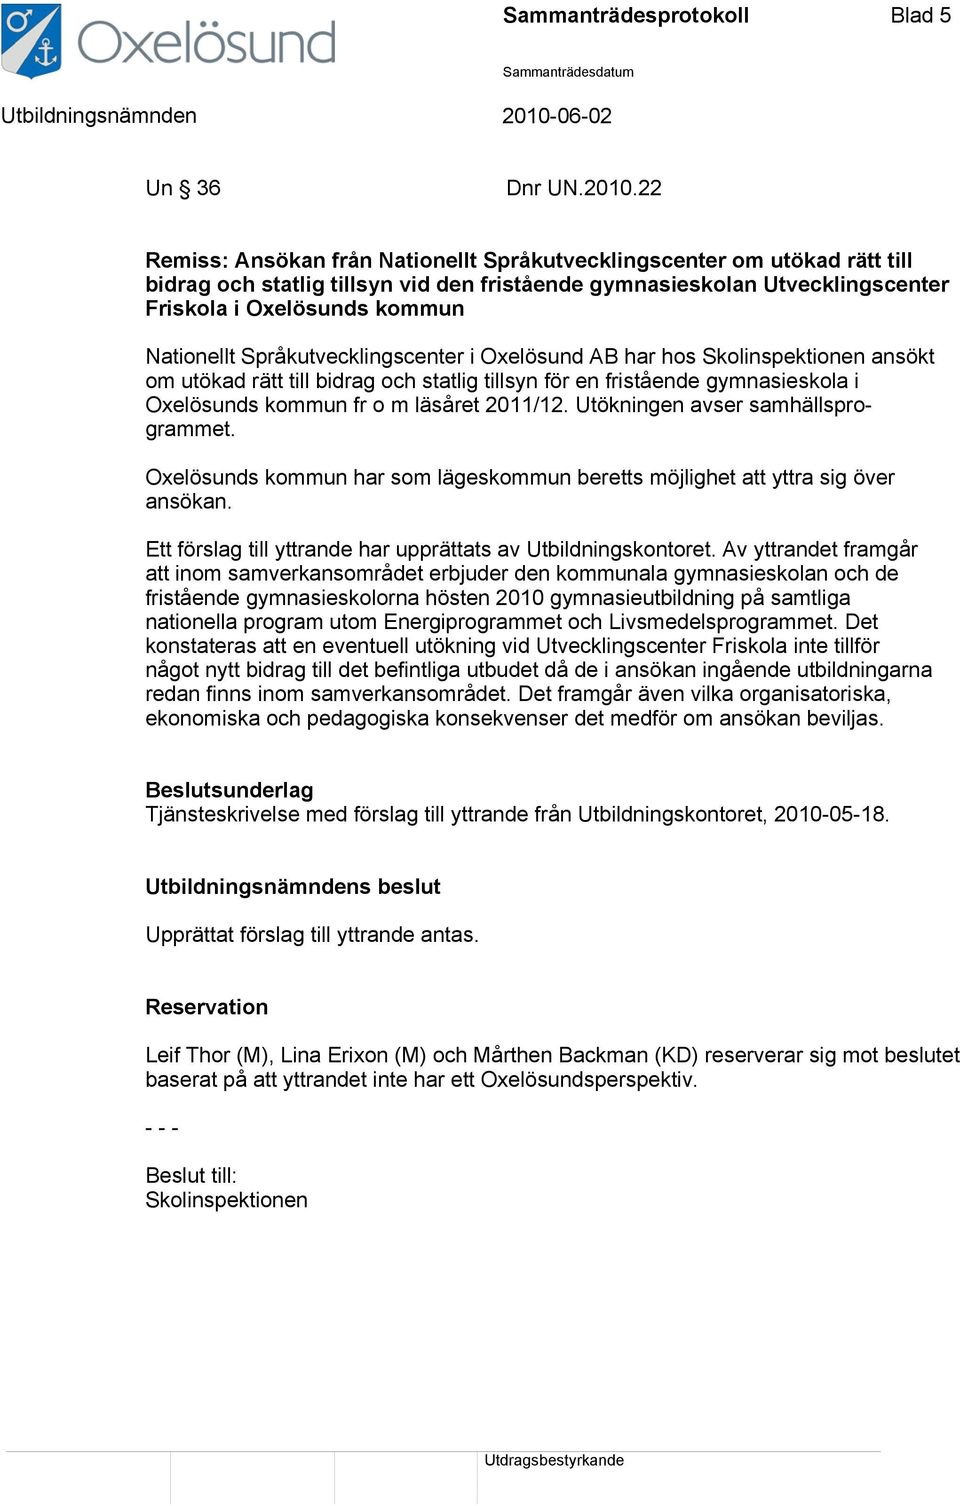 Språkutvecklingscenter i Oxelösund AB har hos Skolinspektionen ansökt om utökad rätt till bidrag och statlig tillsyn för en fristående gymnasieskola i Oxelösunds kommun fr o m läsåret 2011/12.